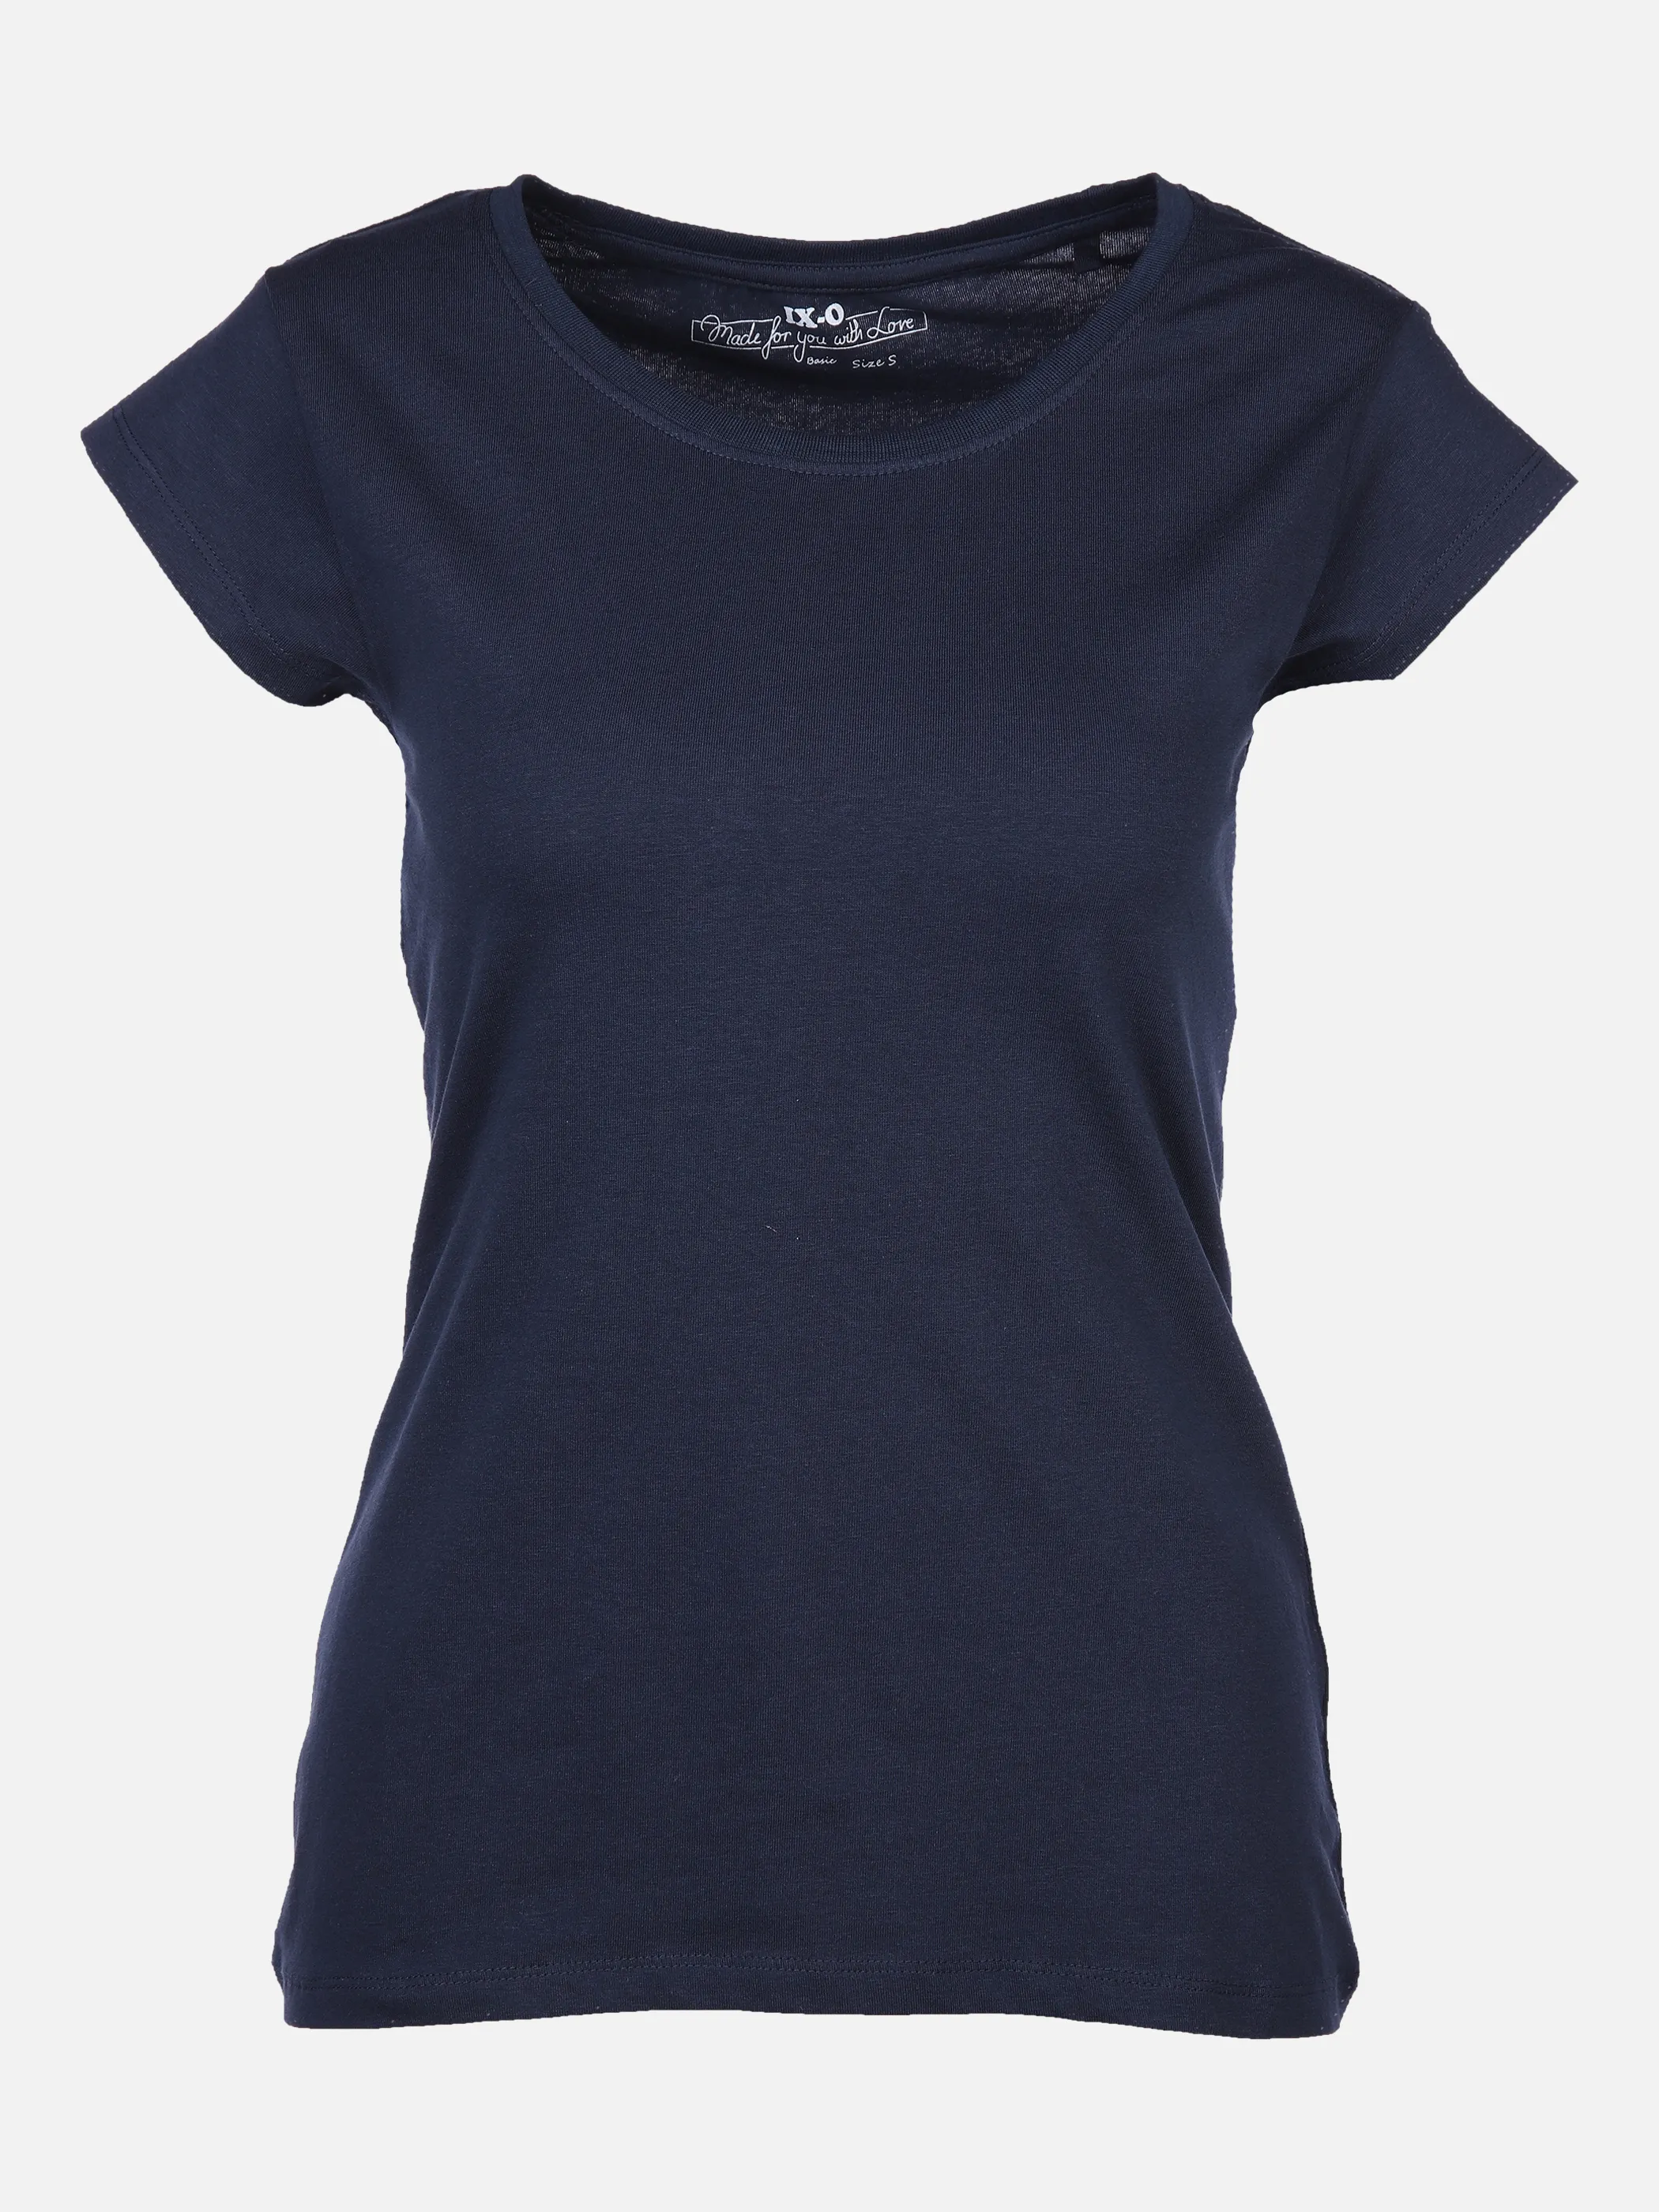 Damen Kurzarm-Shirts & T-Shirts günstig Mode AWG online | kaufen